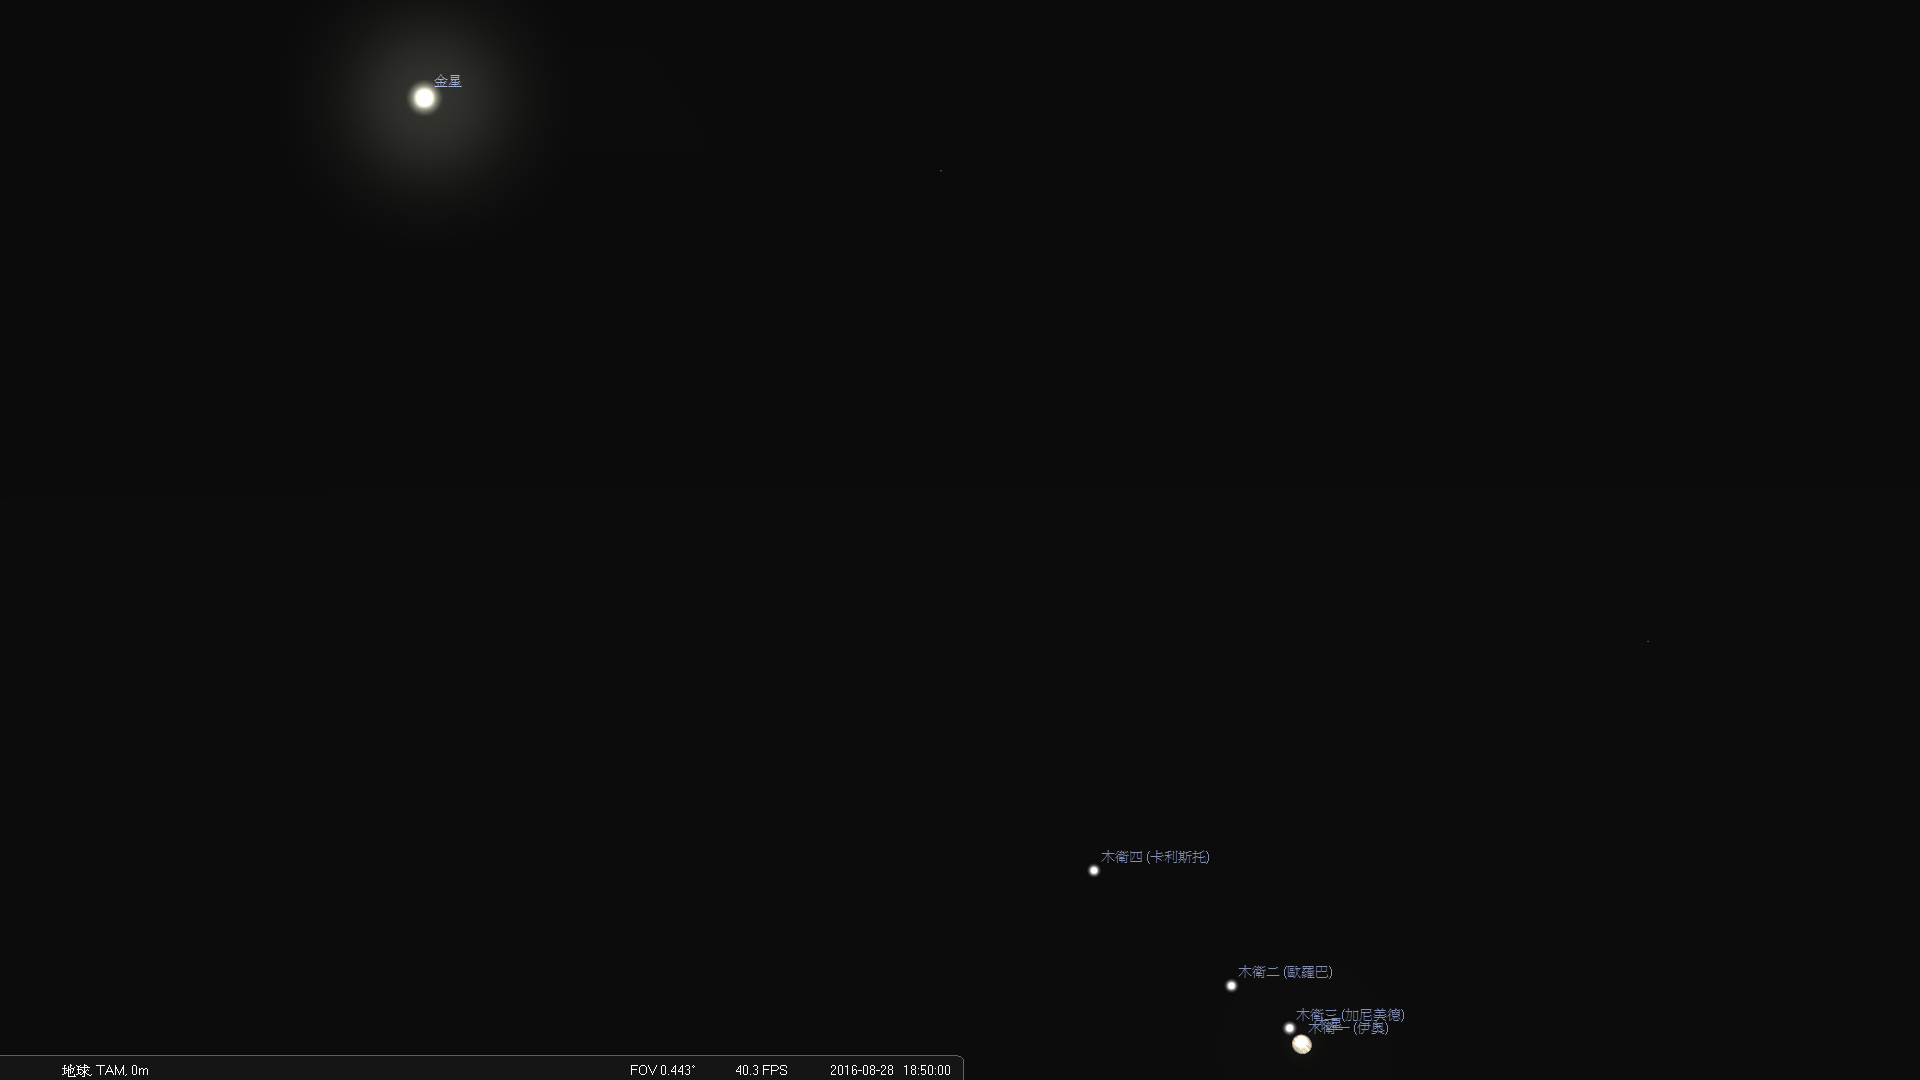 2016/8/28傍晚18:50，望远镜中所见木星与金星示意图。（视野约0.45度）